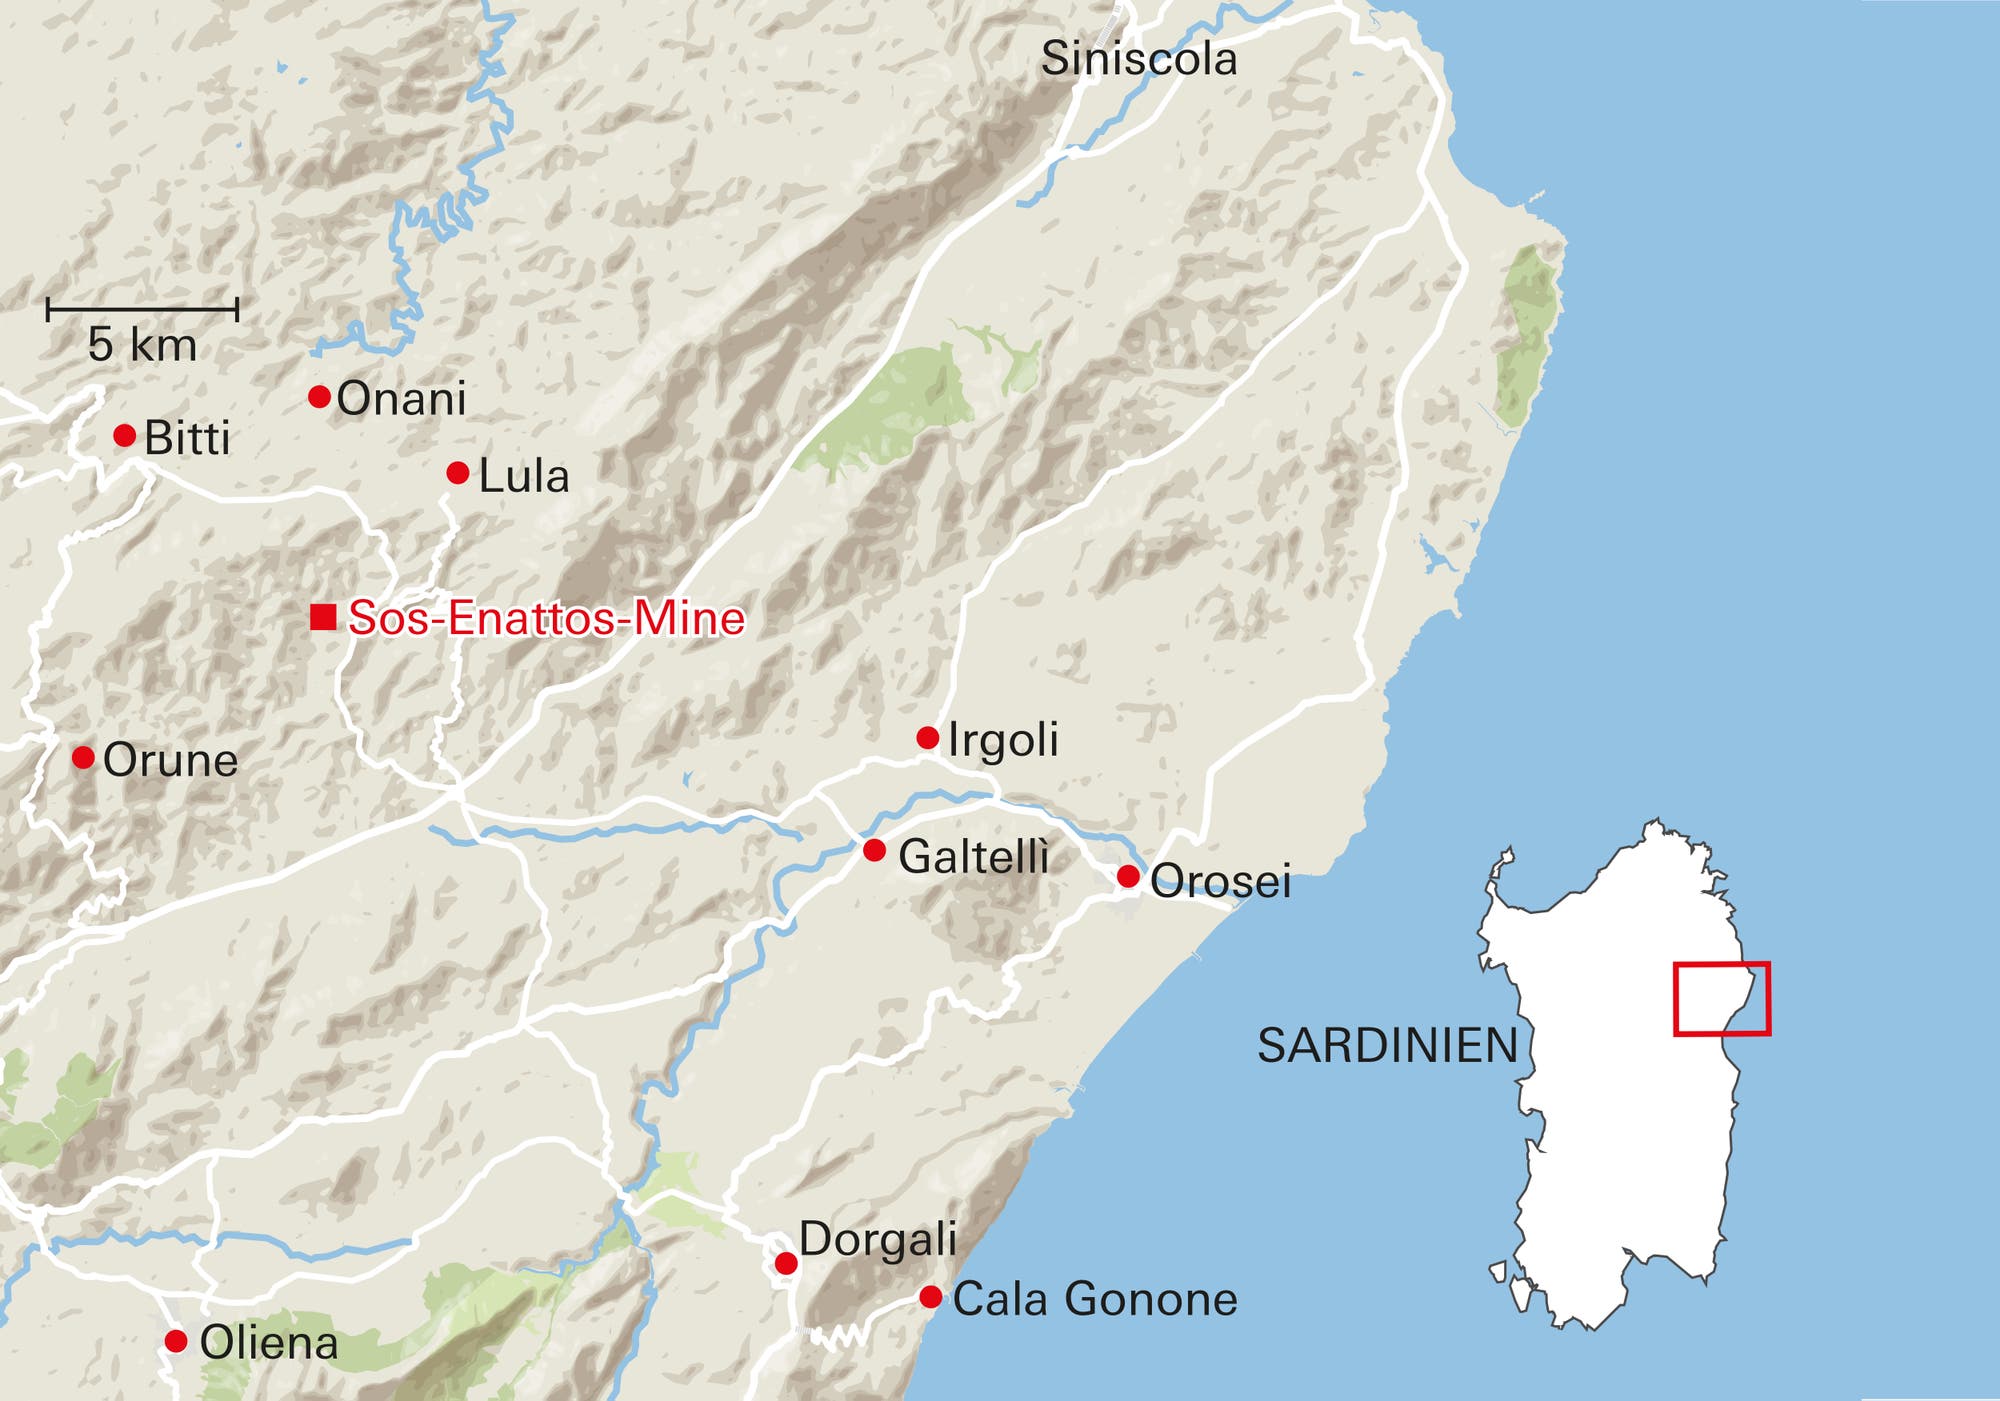 Die Sos-Enattos-Mine befindet sich im Nordwesten Sardiniens, in der Nähe des kleinen Orts Lula